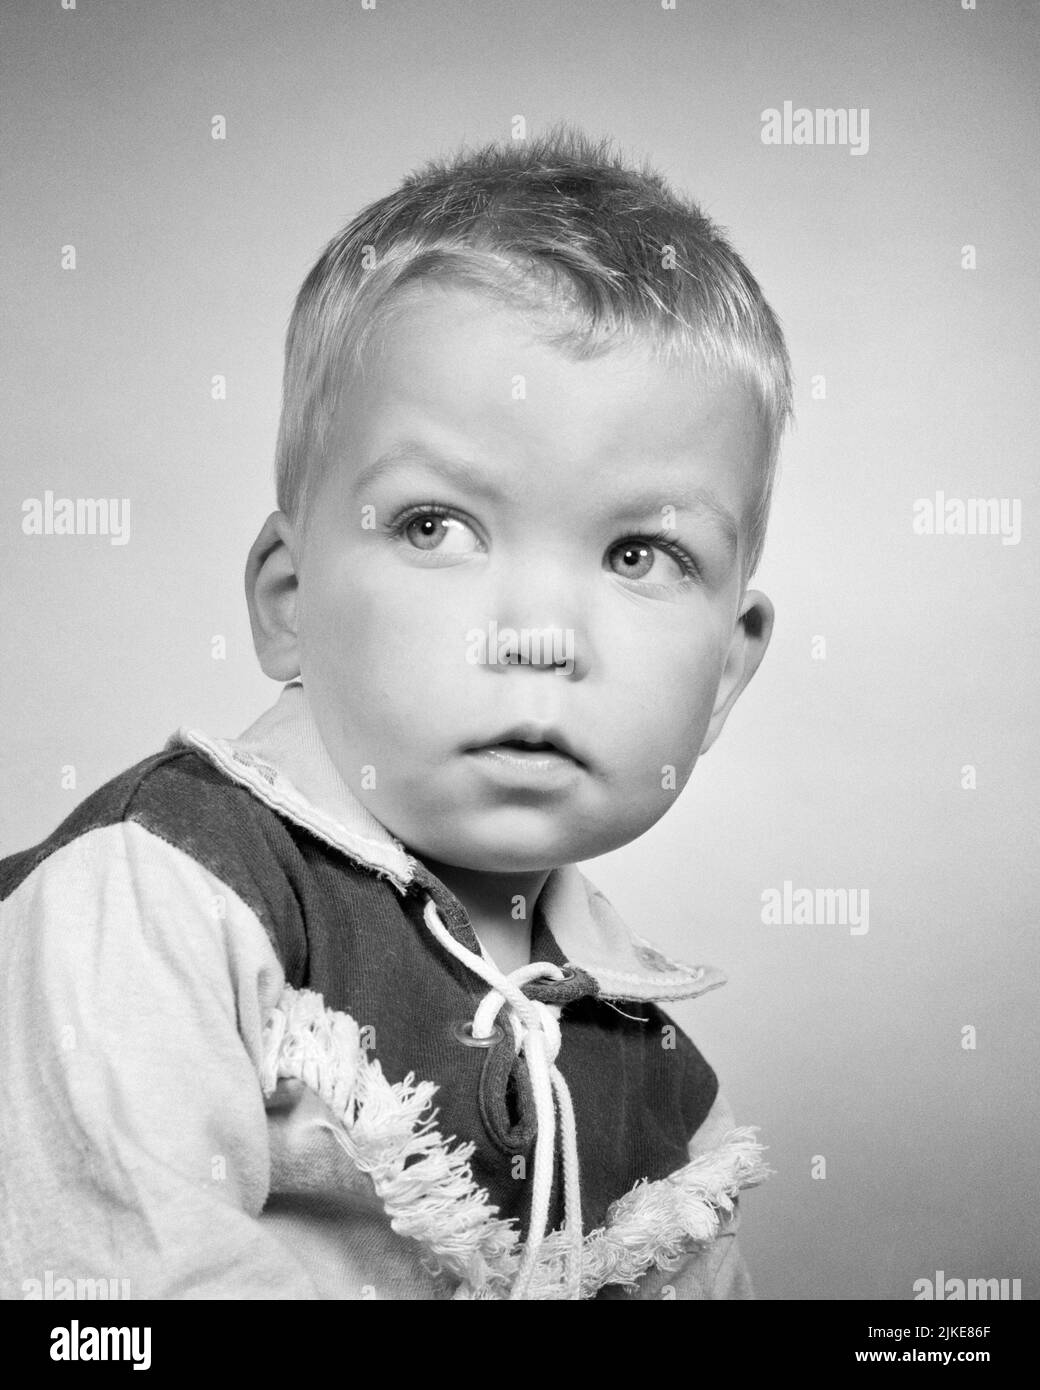 Un garçon de style Banque d'images noir et blanc - Alamy